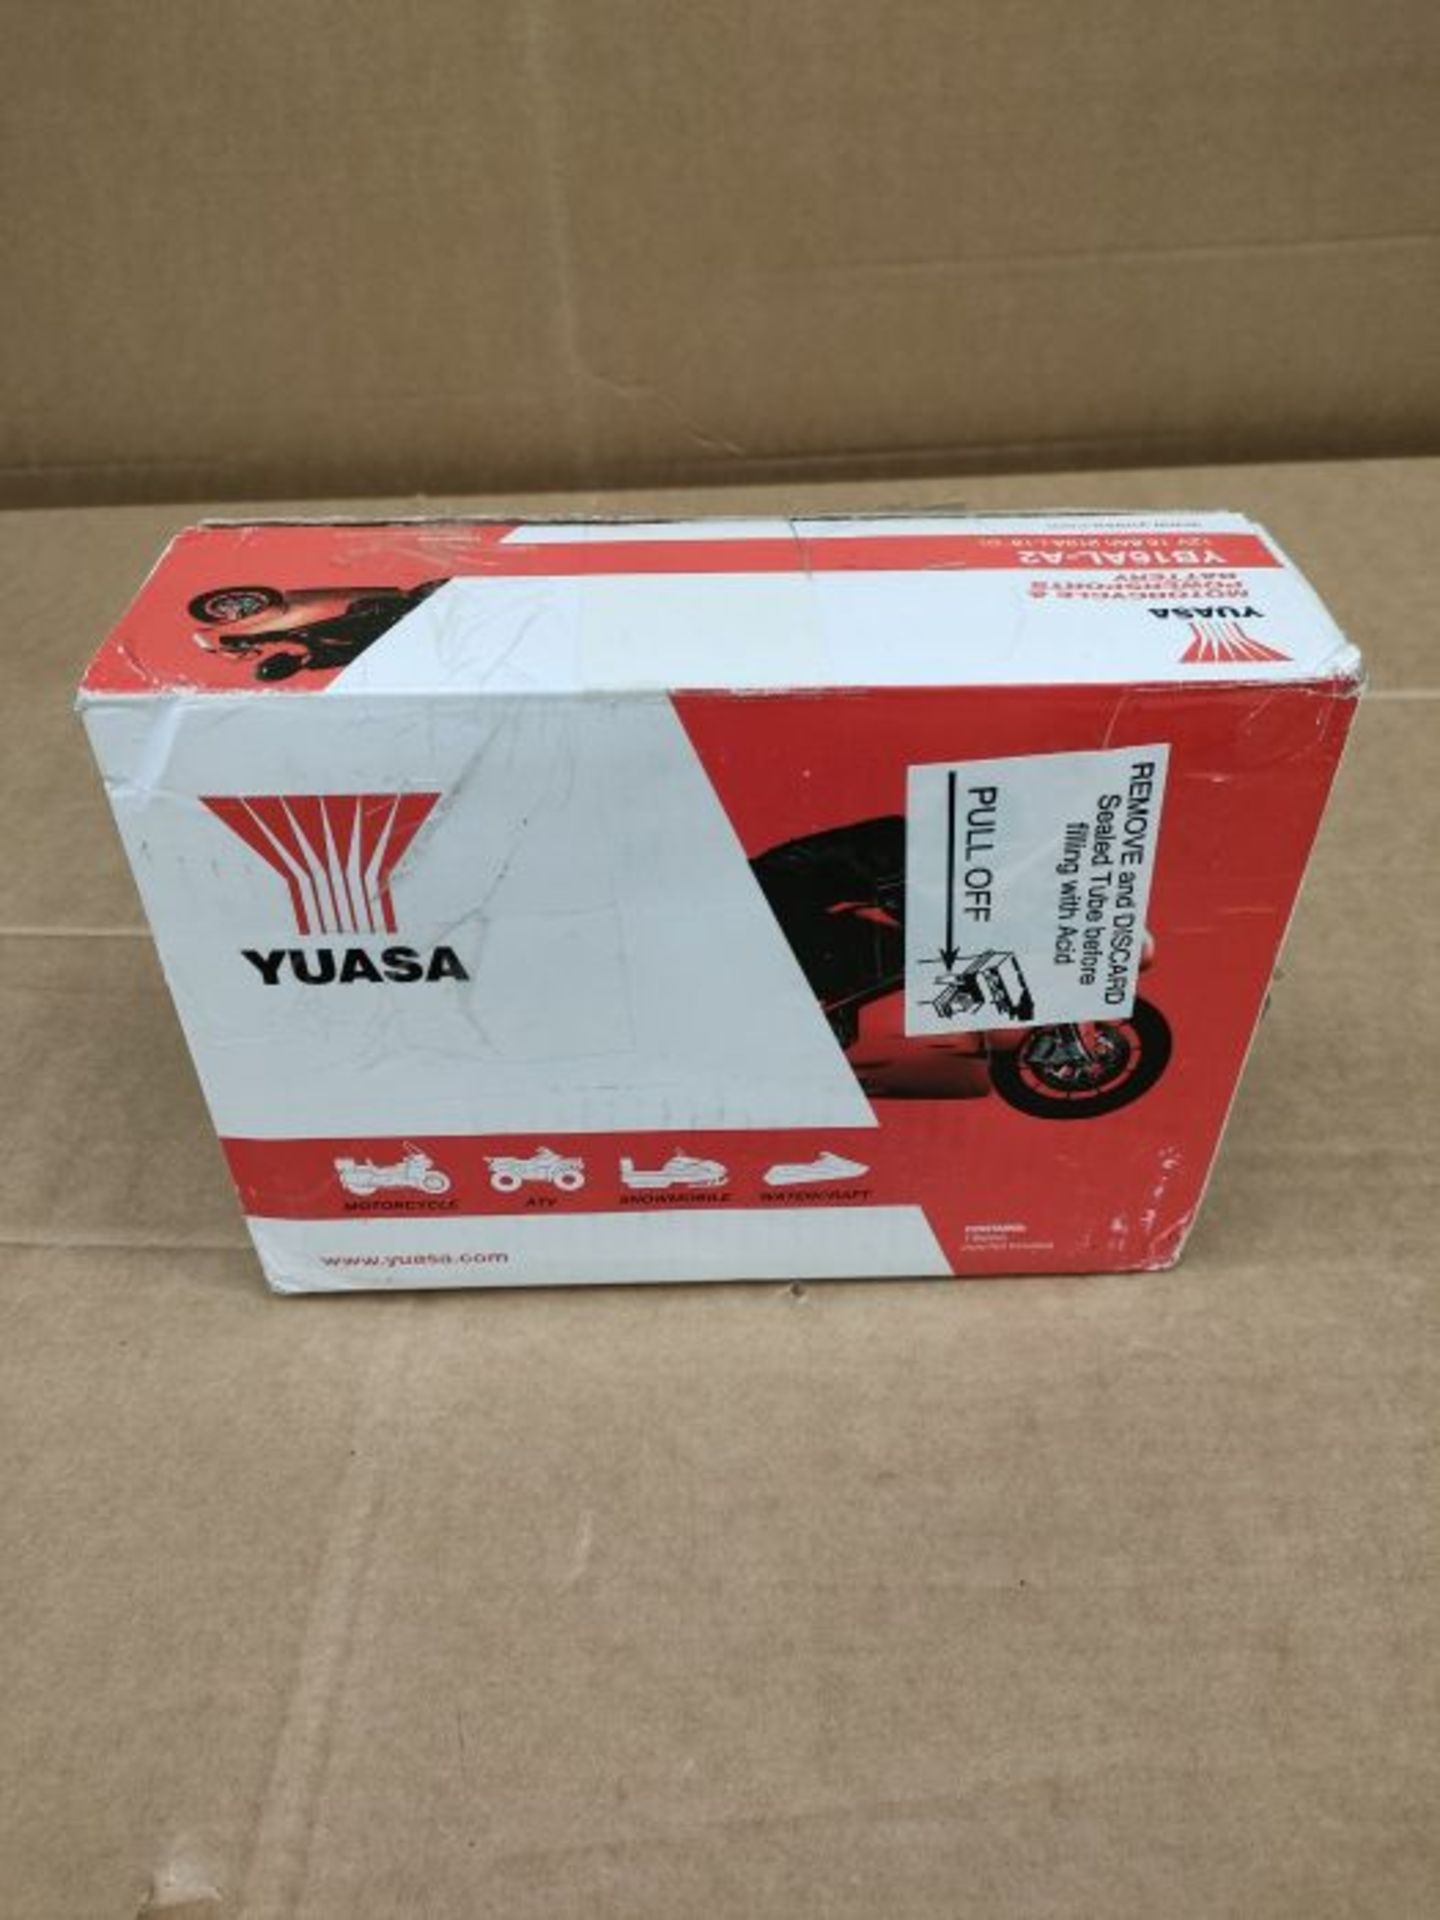 Yuasa YB4L-B Batteria per Motocicletta, 120x70x92 mm, 12V- 4Ah, 1.3 kg- acido non incl - Image 2 of 3